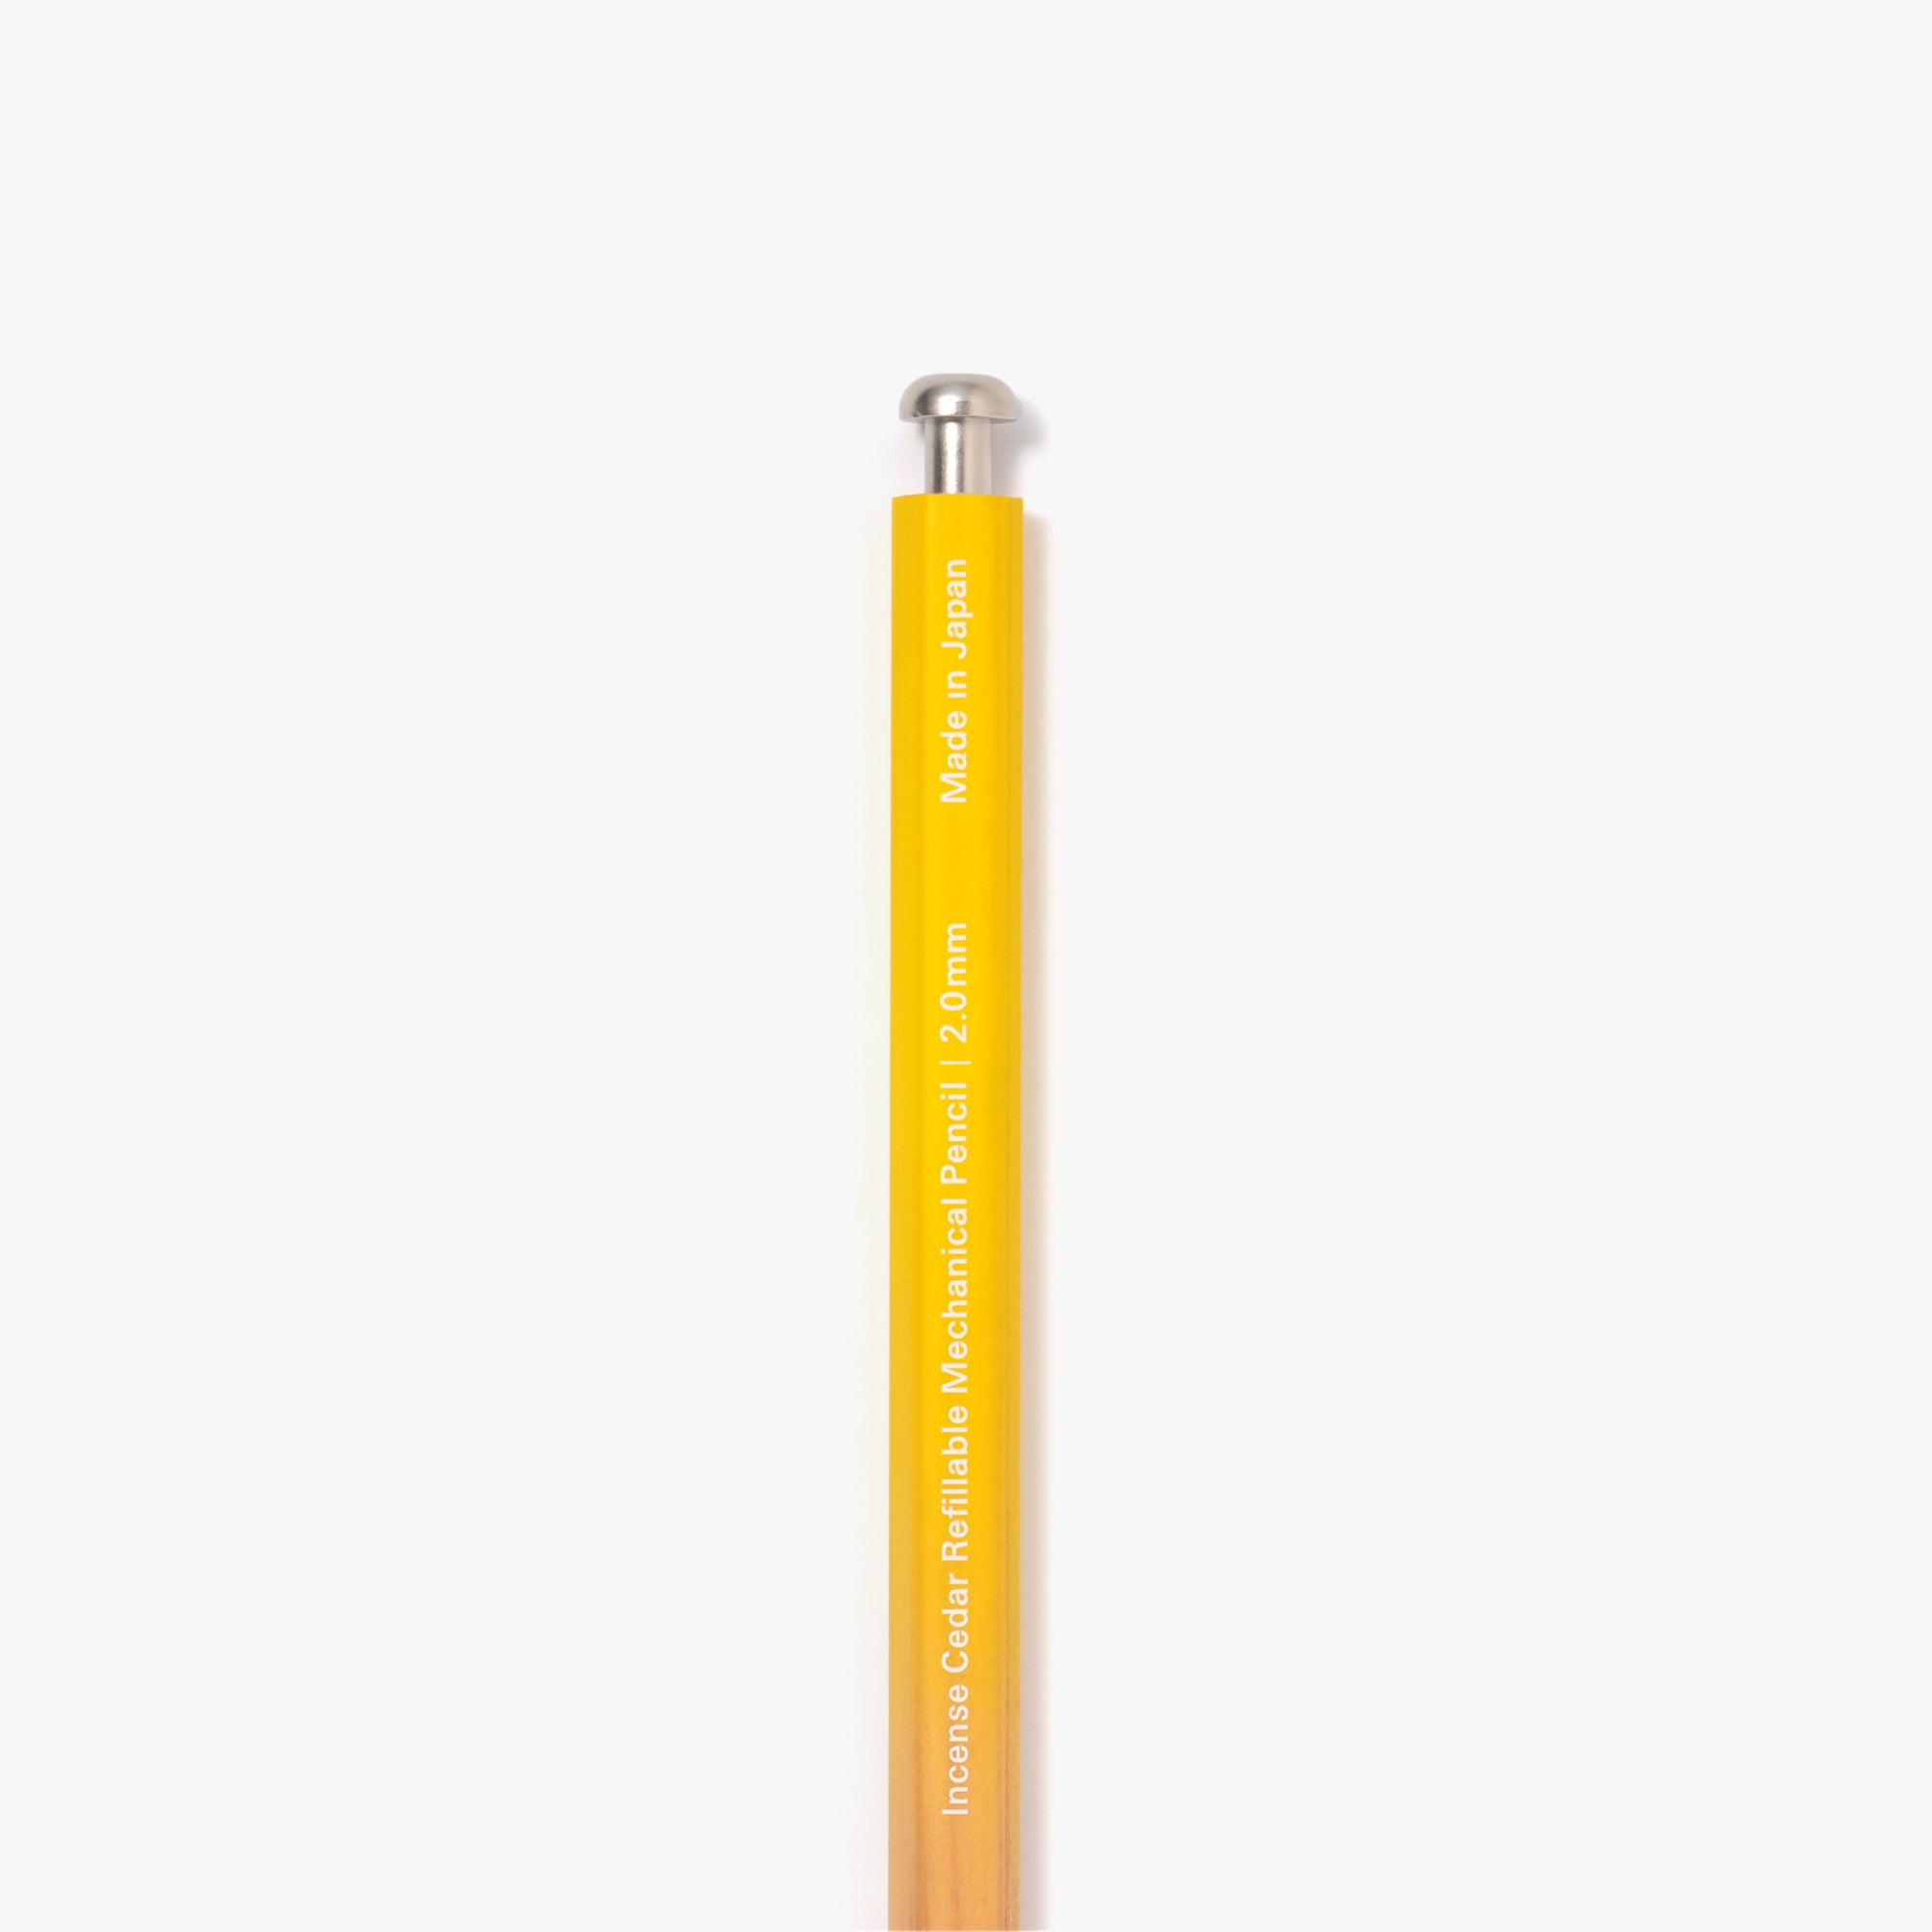 Ensemble de crayons élémentaire blanc